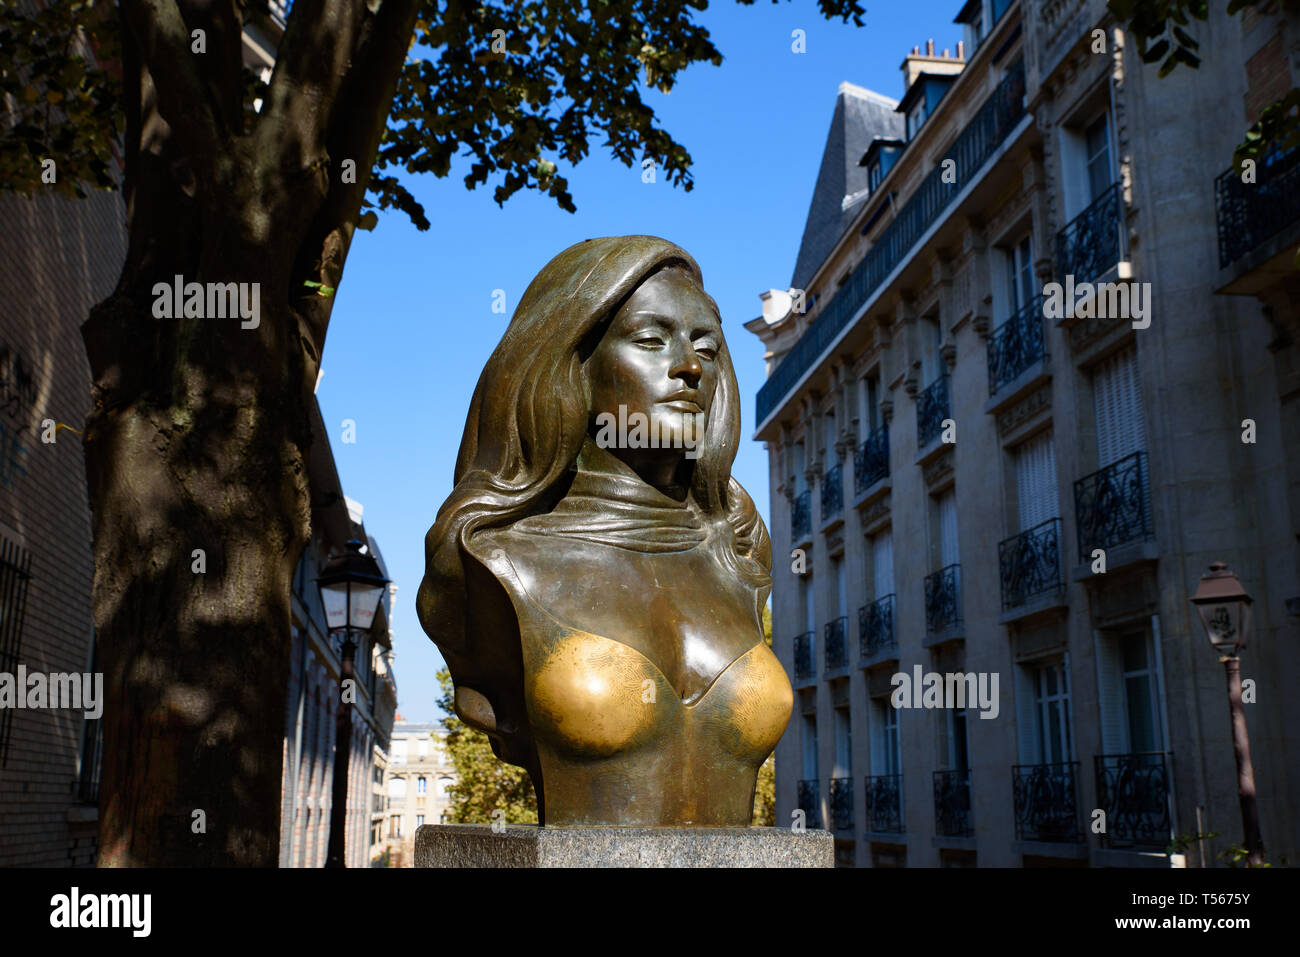 La estatua de Dalida, una cantante y actriz francesa, en el barrio Montmartre, Francia Foto de stock